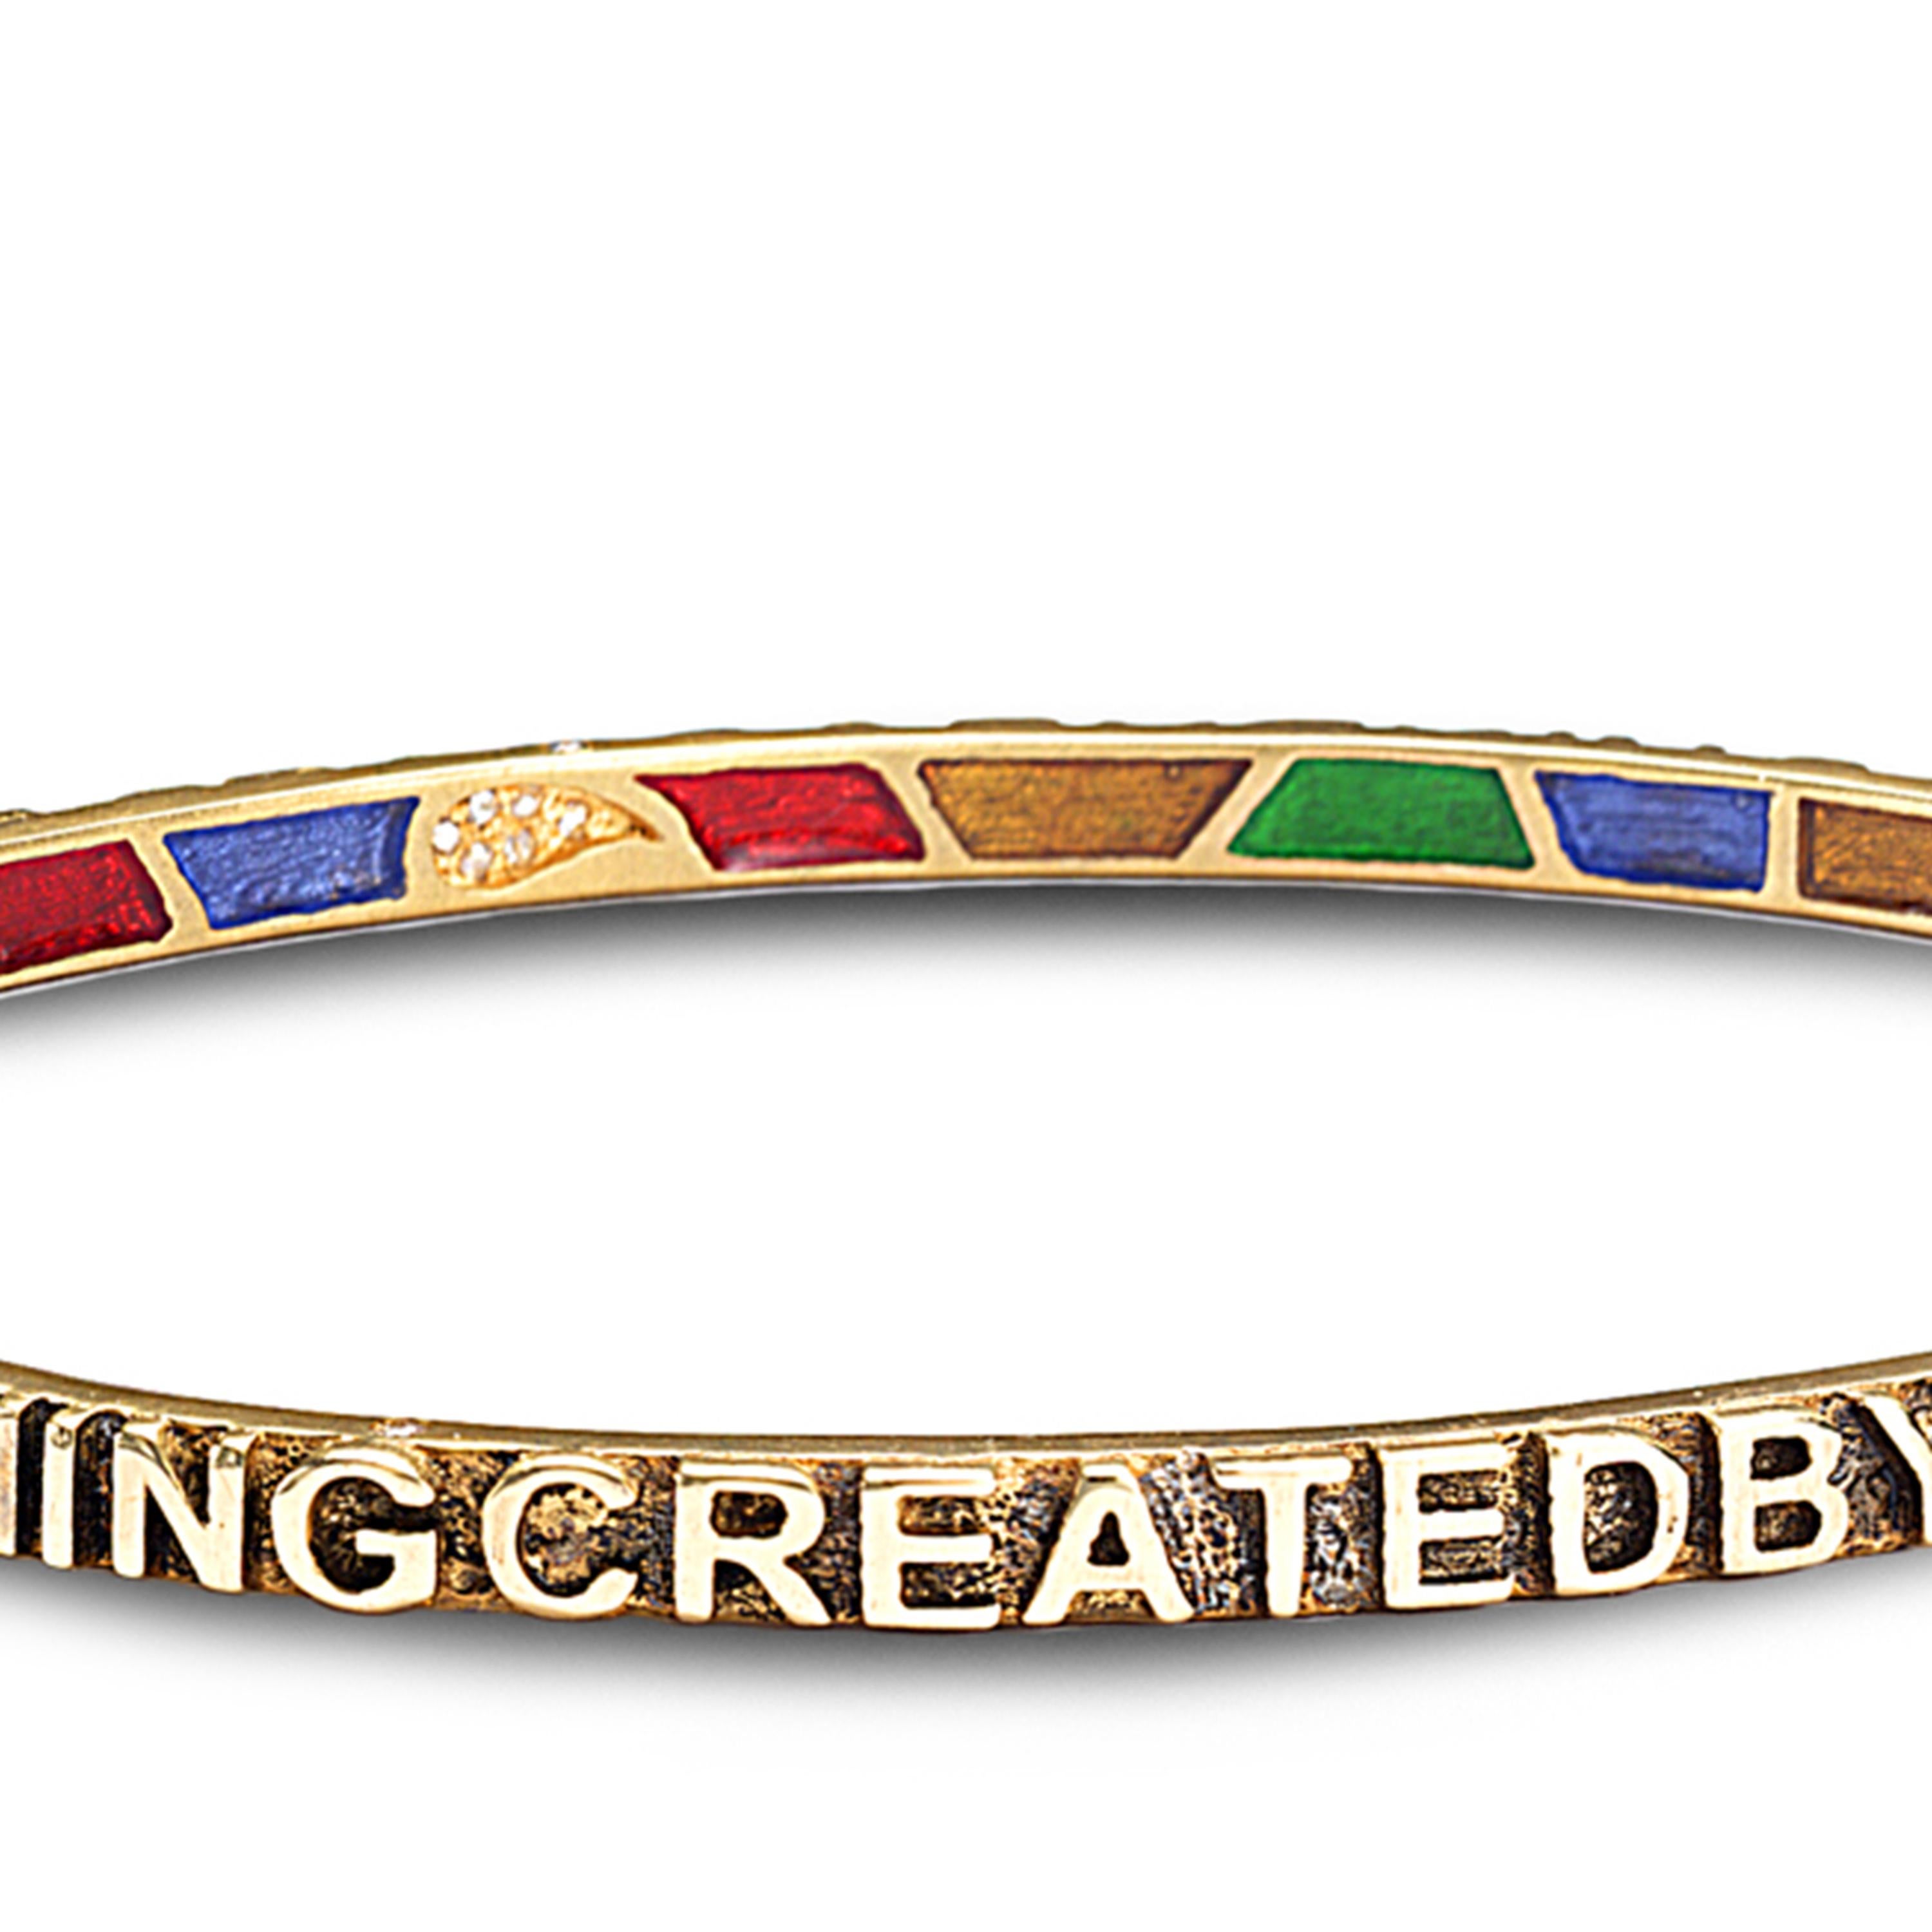 20k gold bracelet